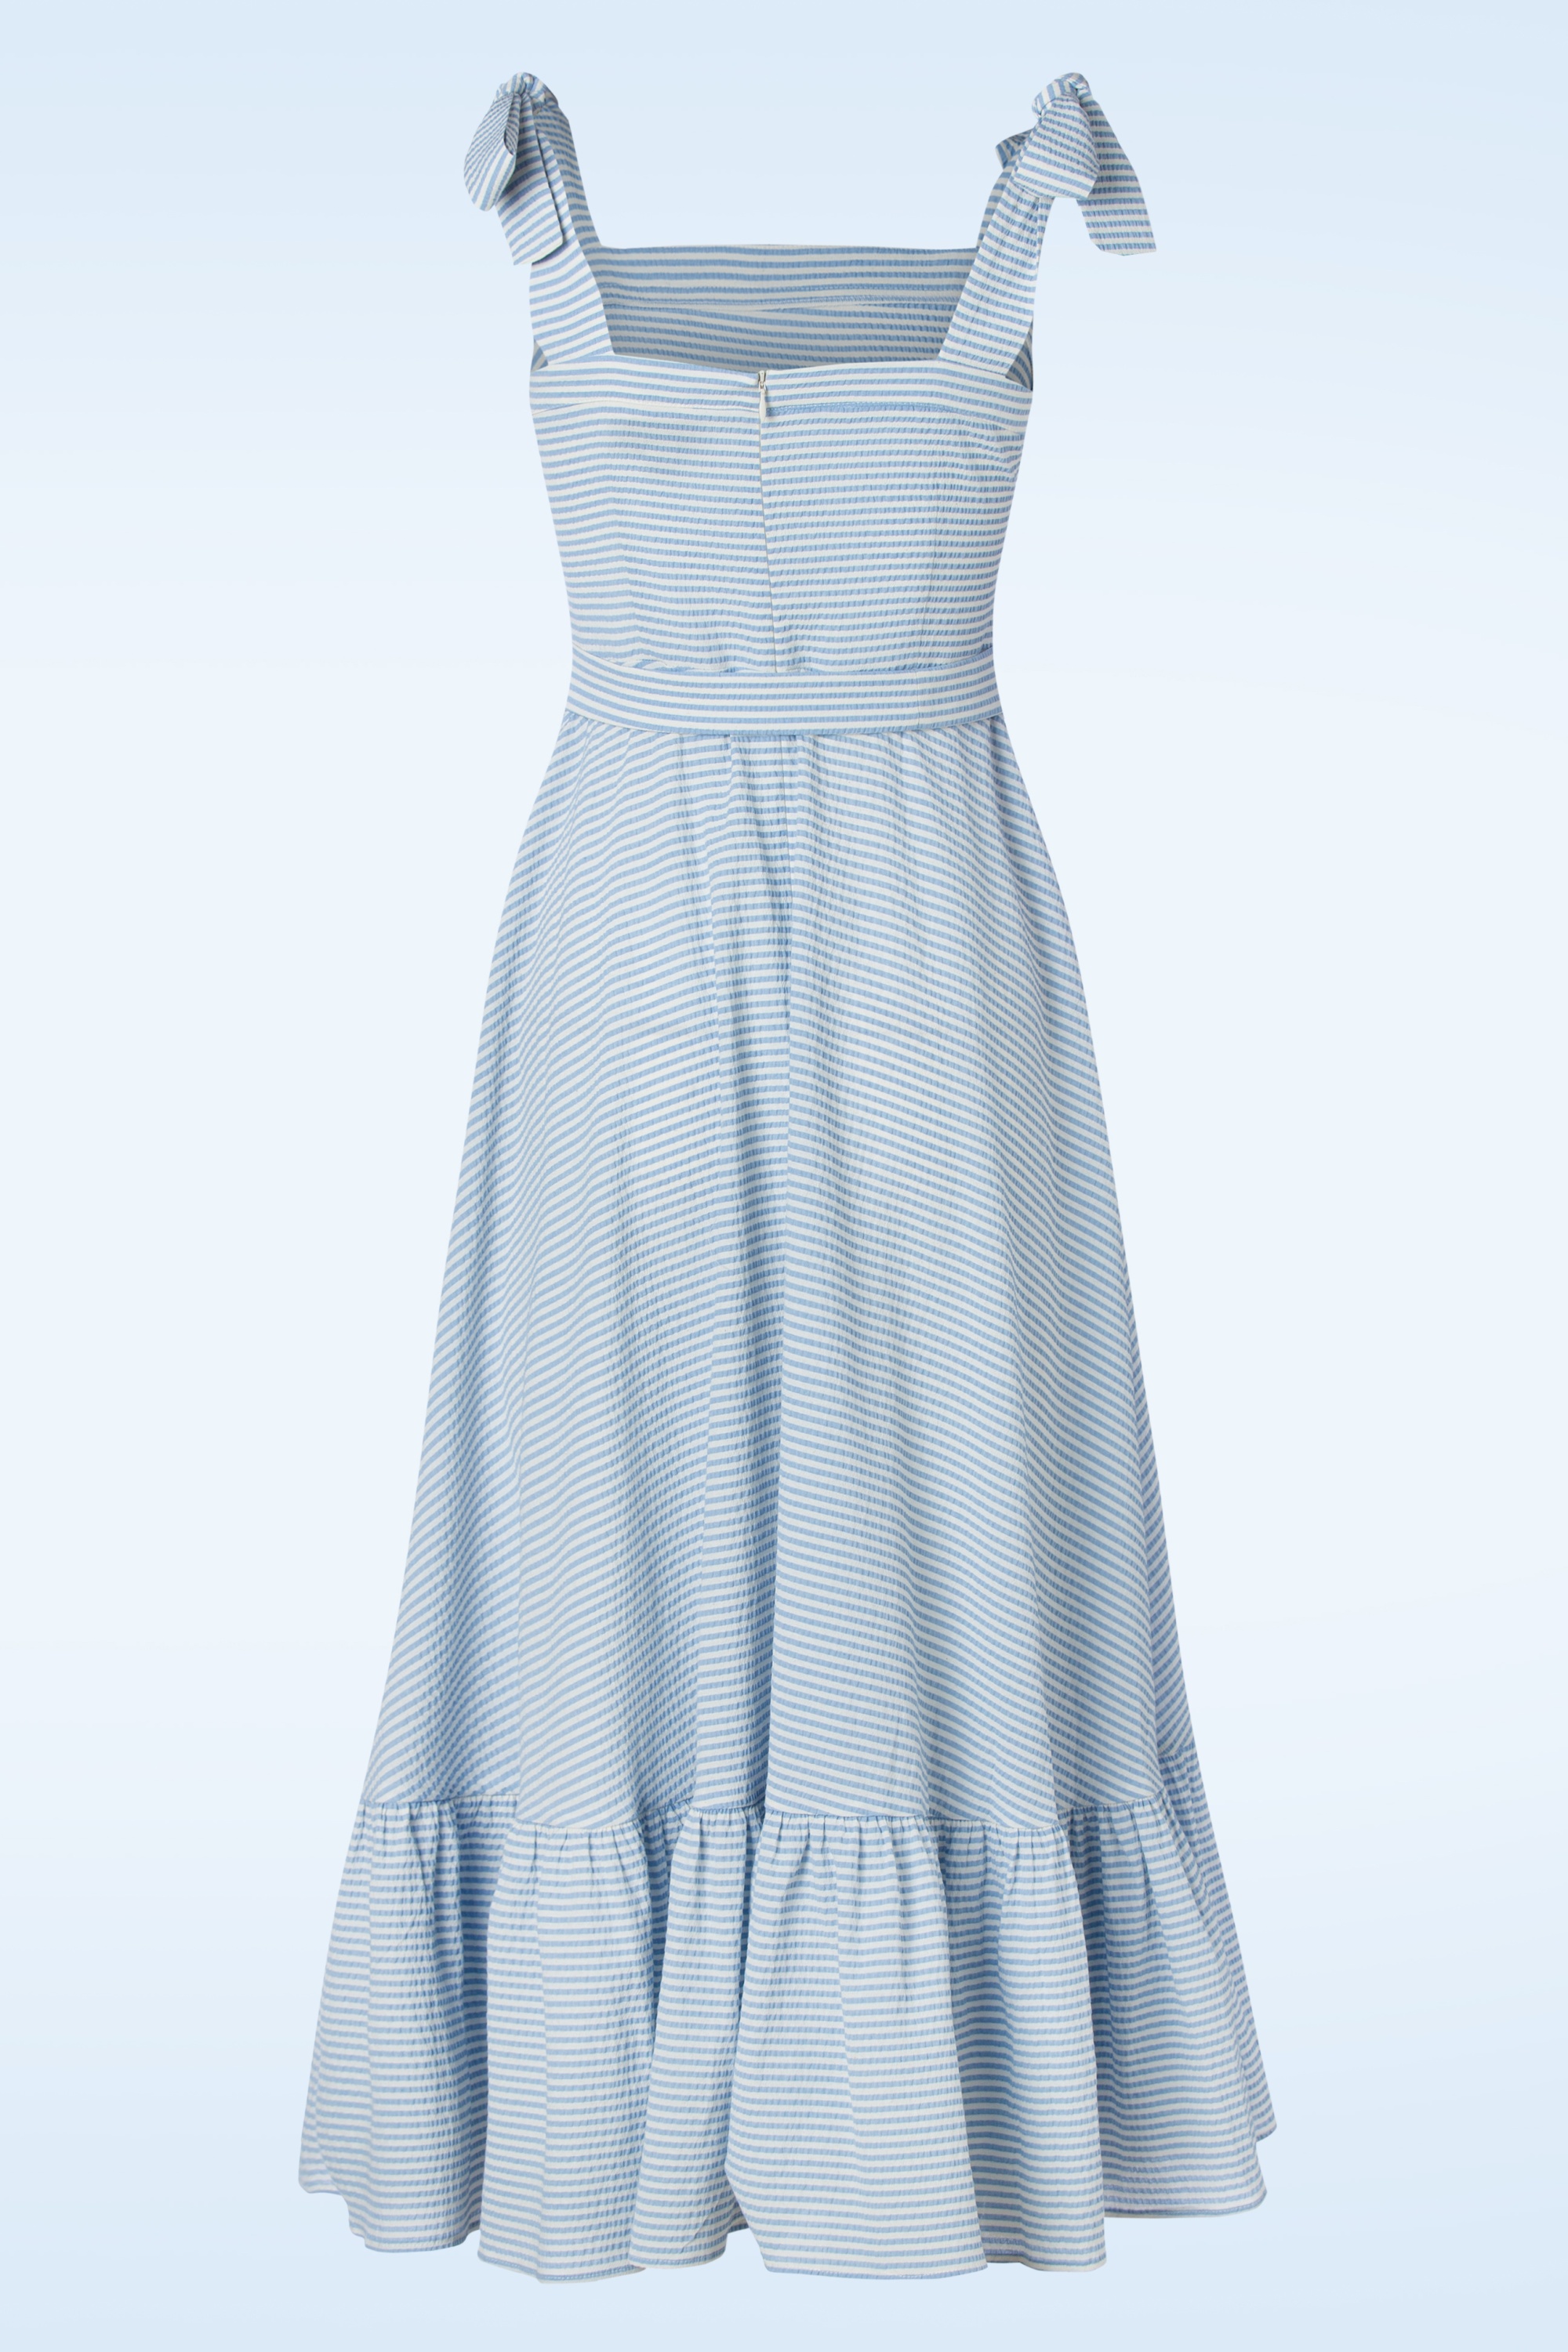 Collectif Clothing - Katrina Seersucker midi jurk in blauw en wit 3